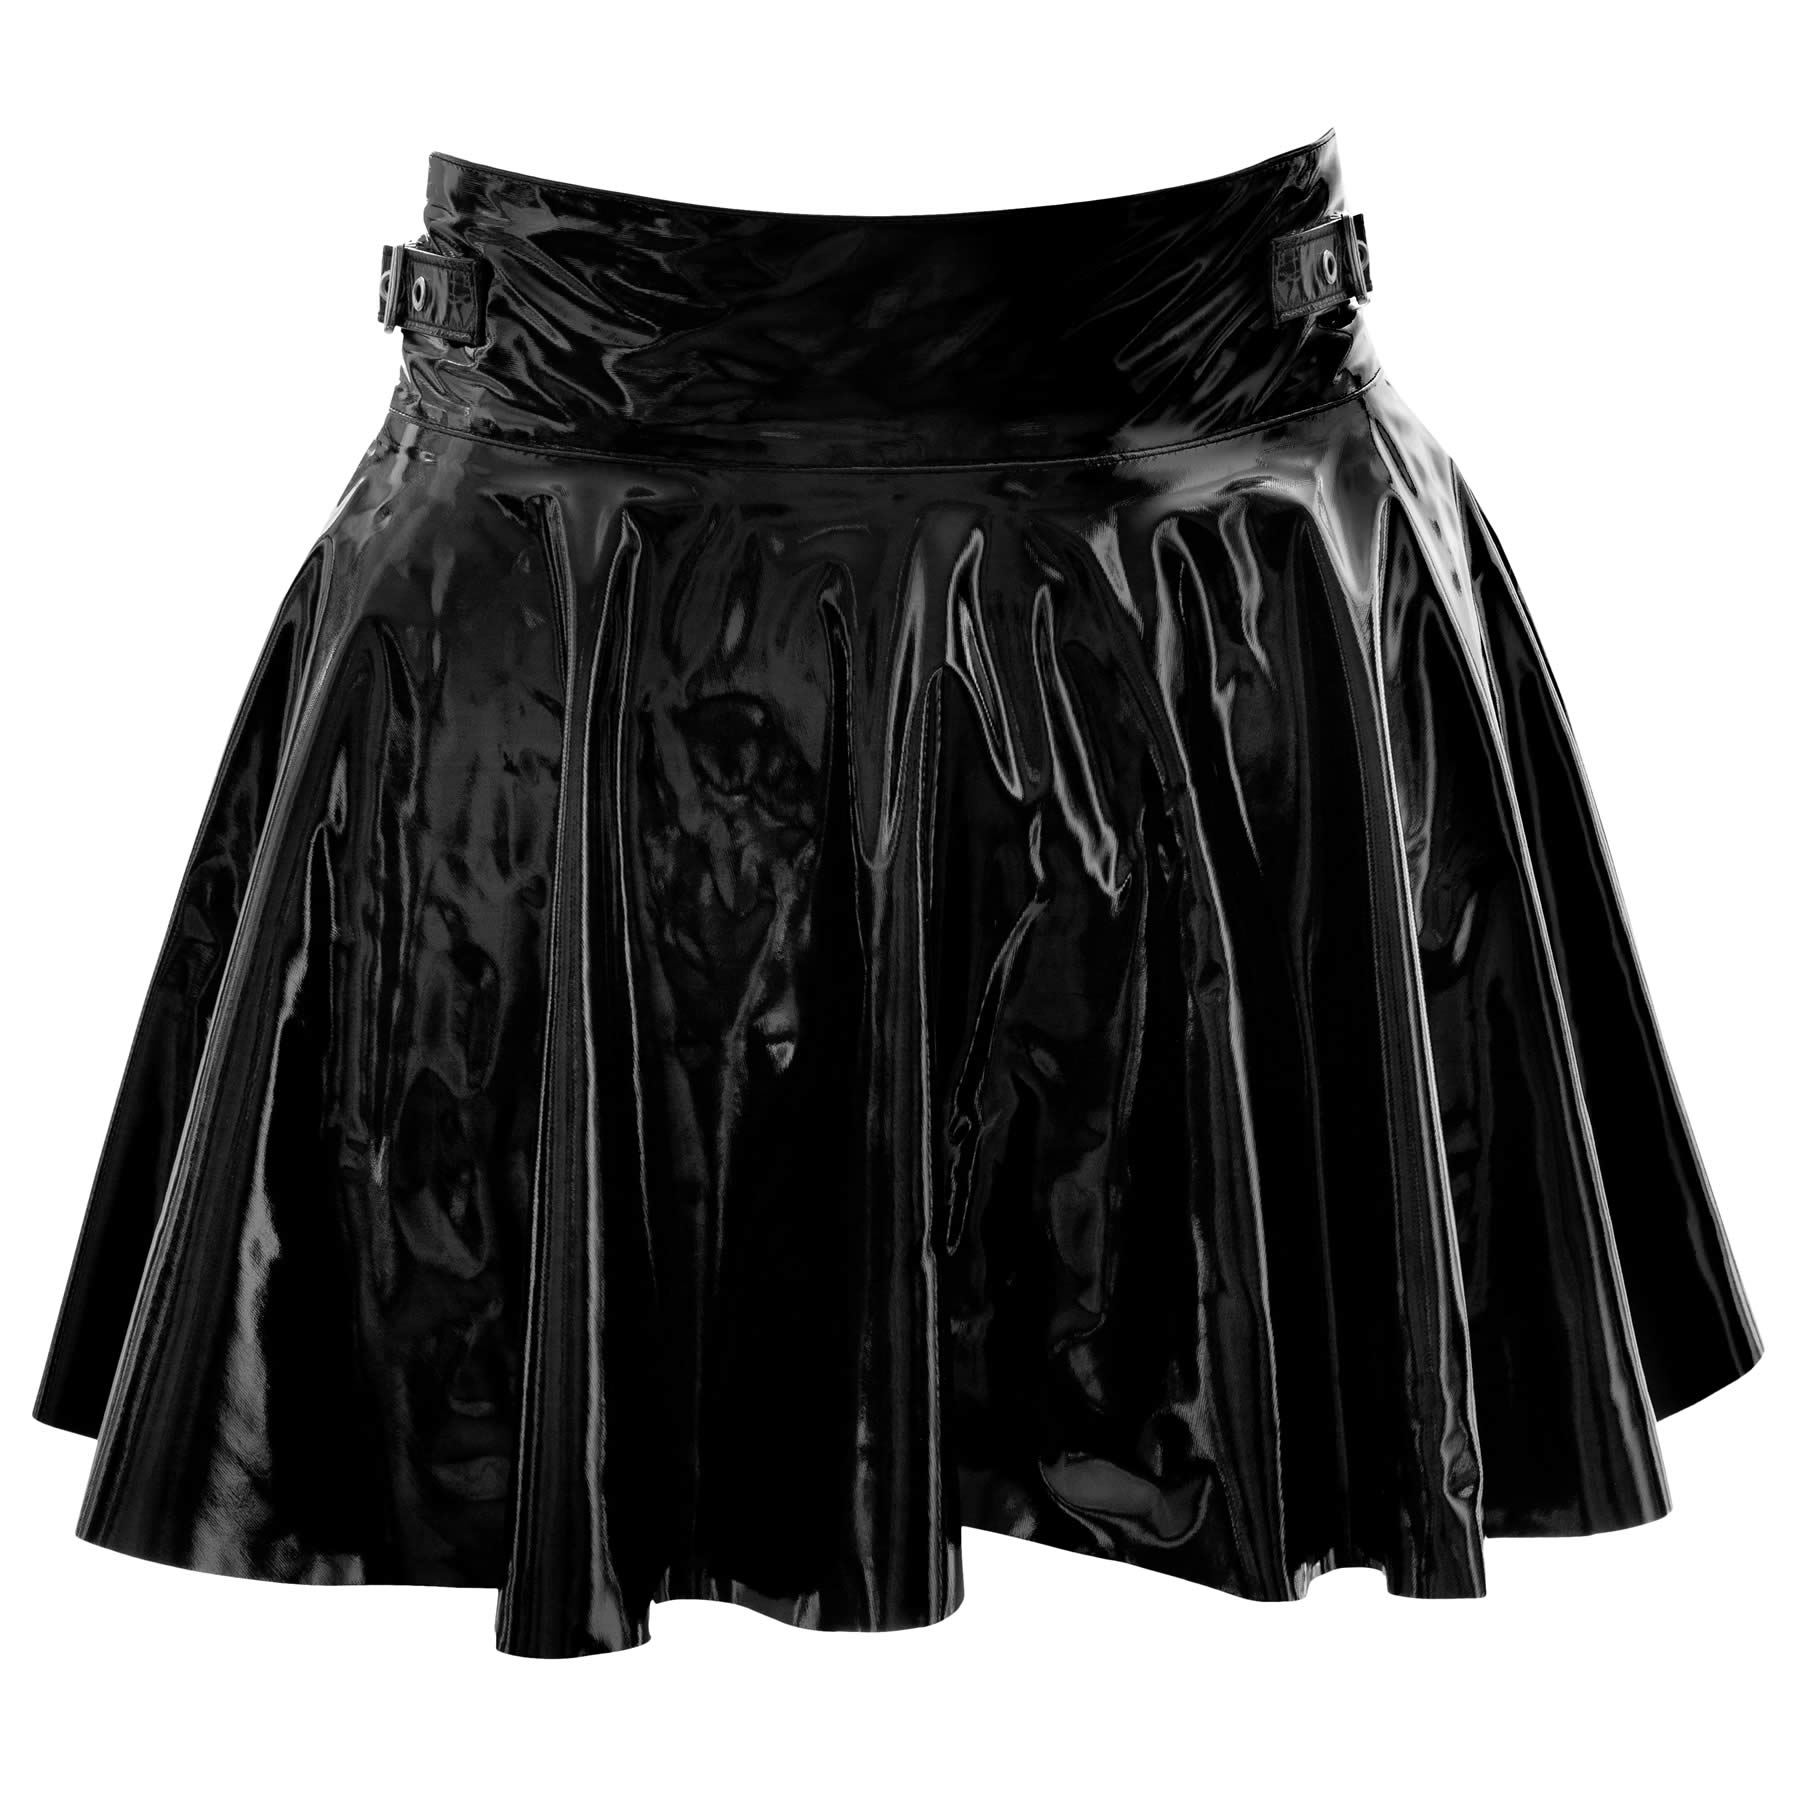 Vinyl mini skirt with zipper